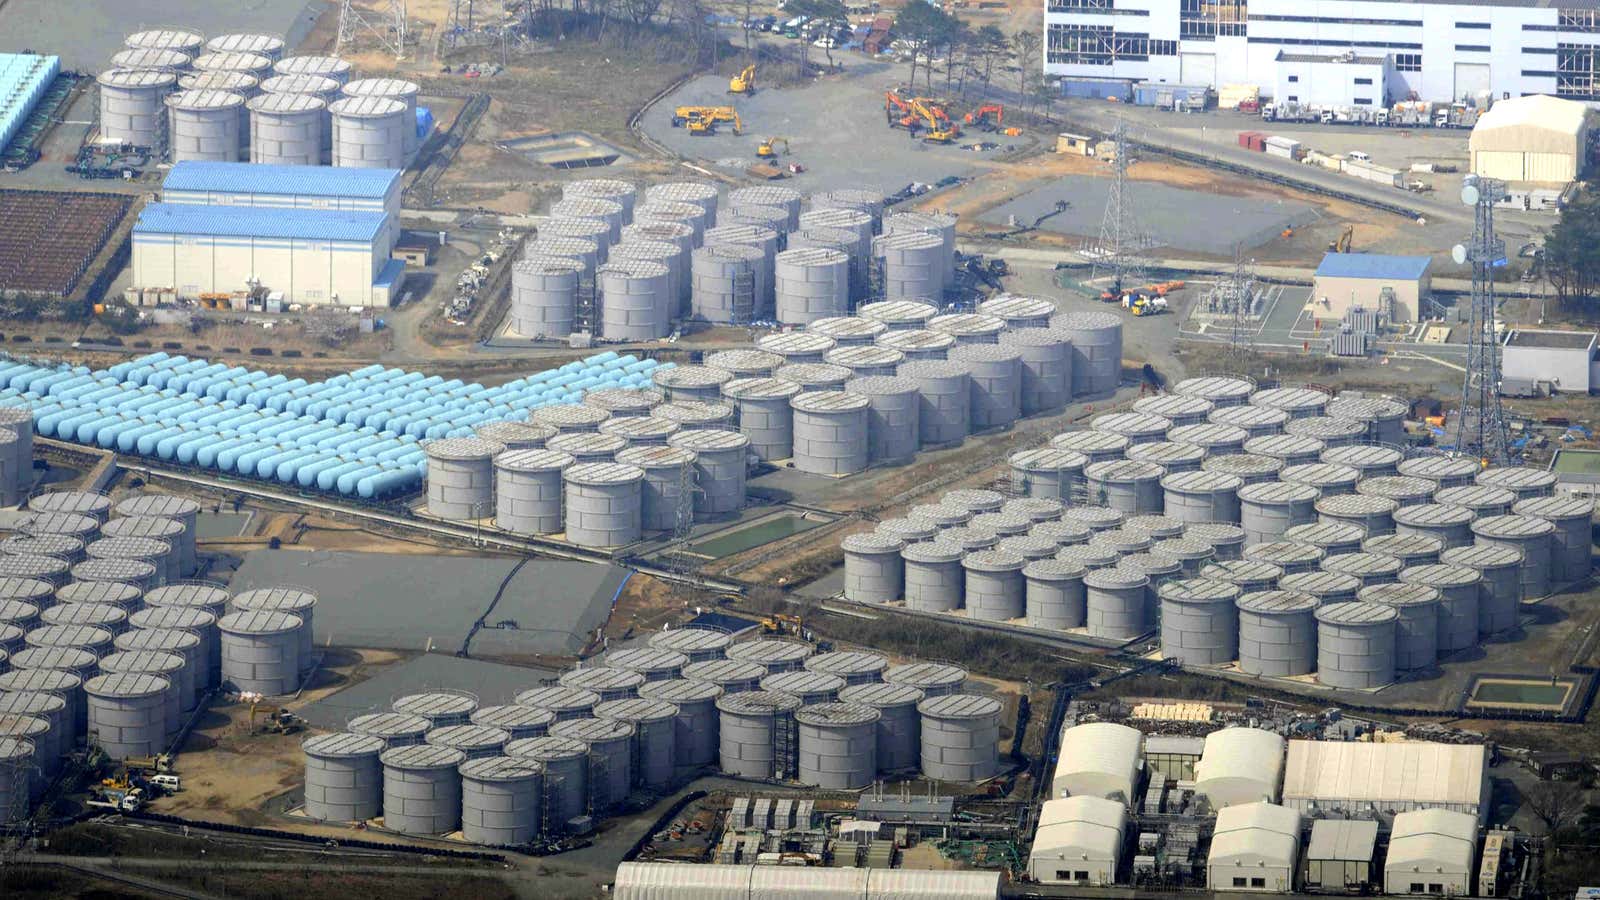 Fukushima’s water storage tanks.